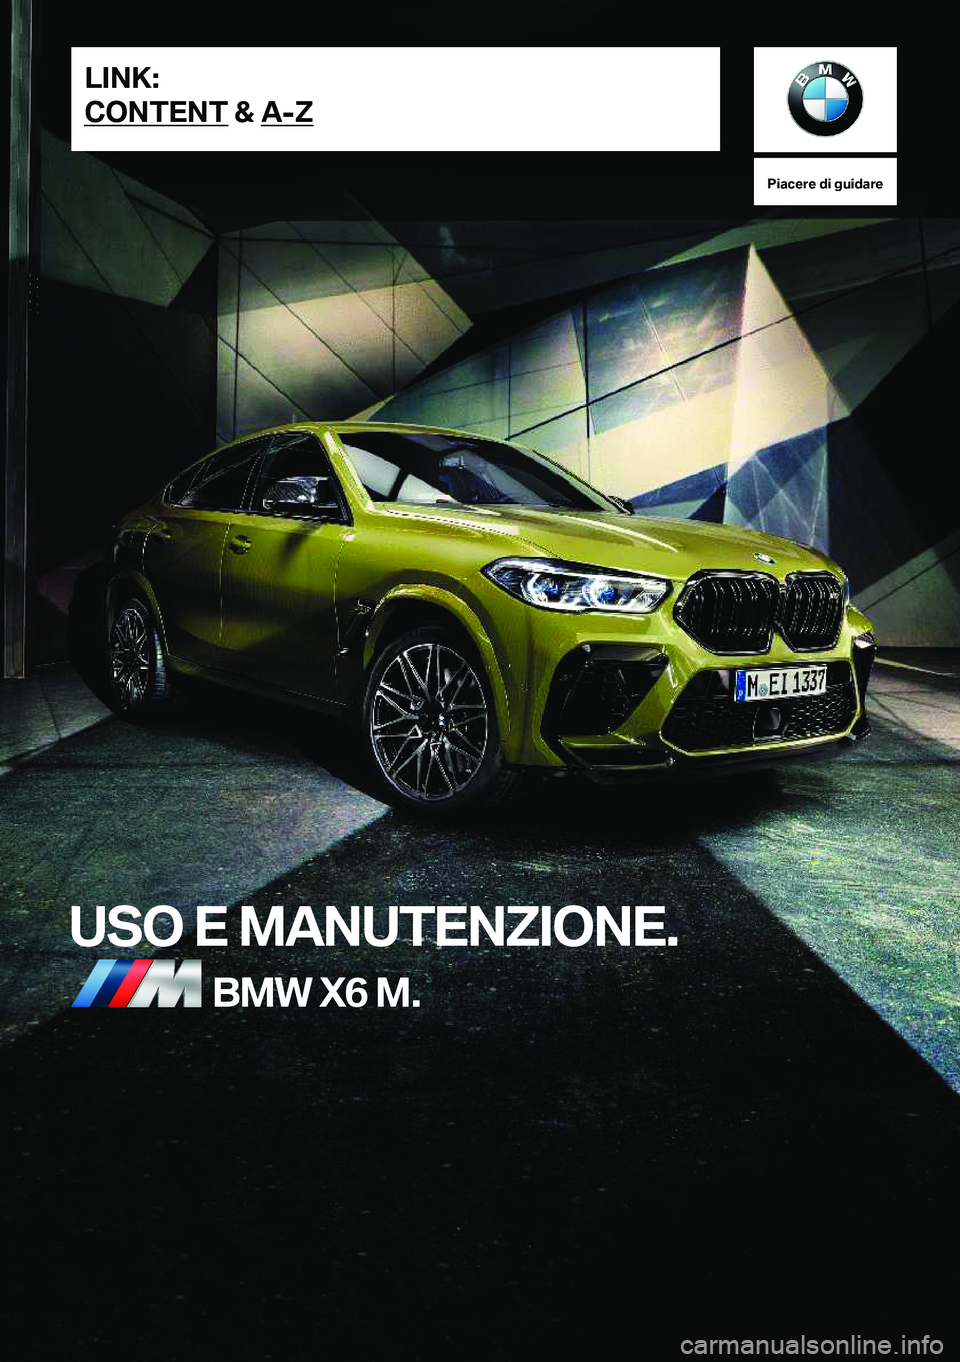 BMW X6 M 2020  Libretti Di Uso E manutenzione (in Italian) �P�i�a�c�e�r�e��d�i��g�u�i�d�a�r�e
�U�S�O��E��M�A�N�U�T�E�N�Z�I�O�N�E�.�B�M�W��X�6��M�.�L�I�N�K�:
�C�O�N�T�E�N�T��&��A�-�Z�O�n�l�i�n�e��E�d�i�t�i�o�n��f�o�r��P�a�r�t��n�o�.��0�1�4�0�5�A�0